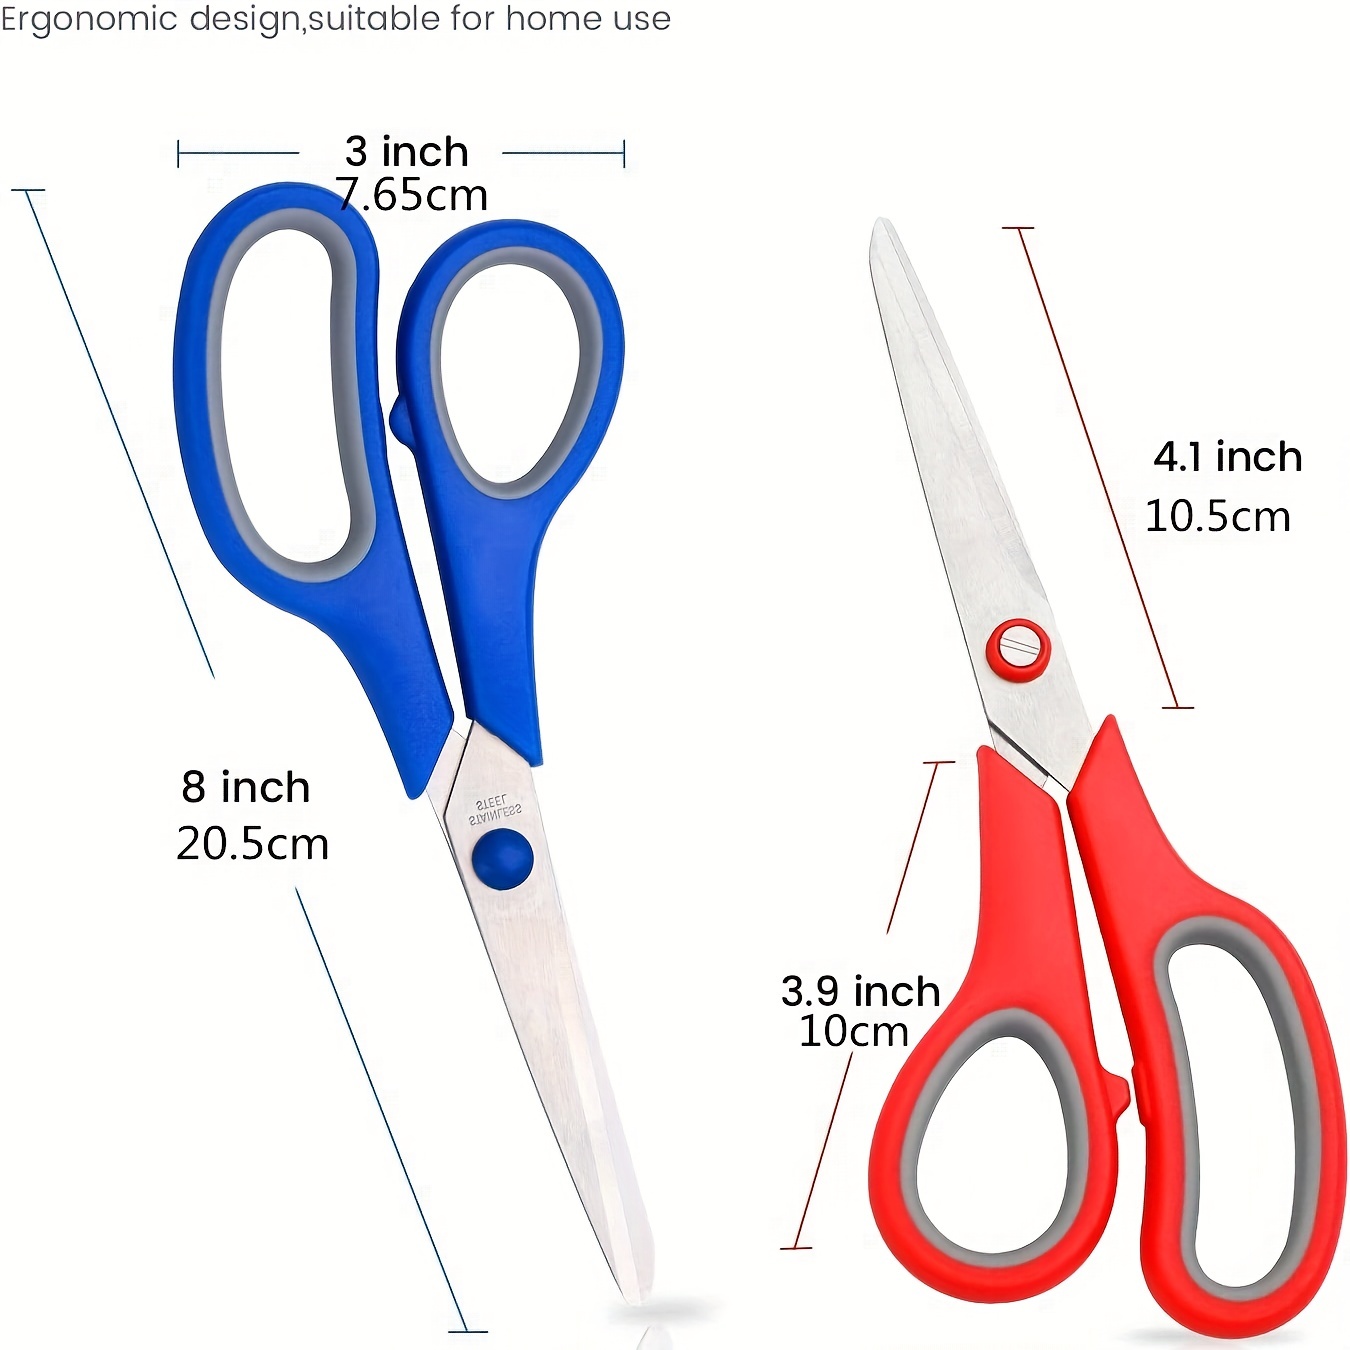 Scissors Bulk Set of 5-Pack Niutop 8 Multipurpose Sharp Sewing